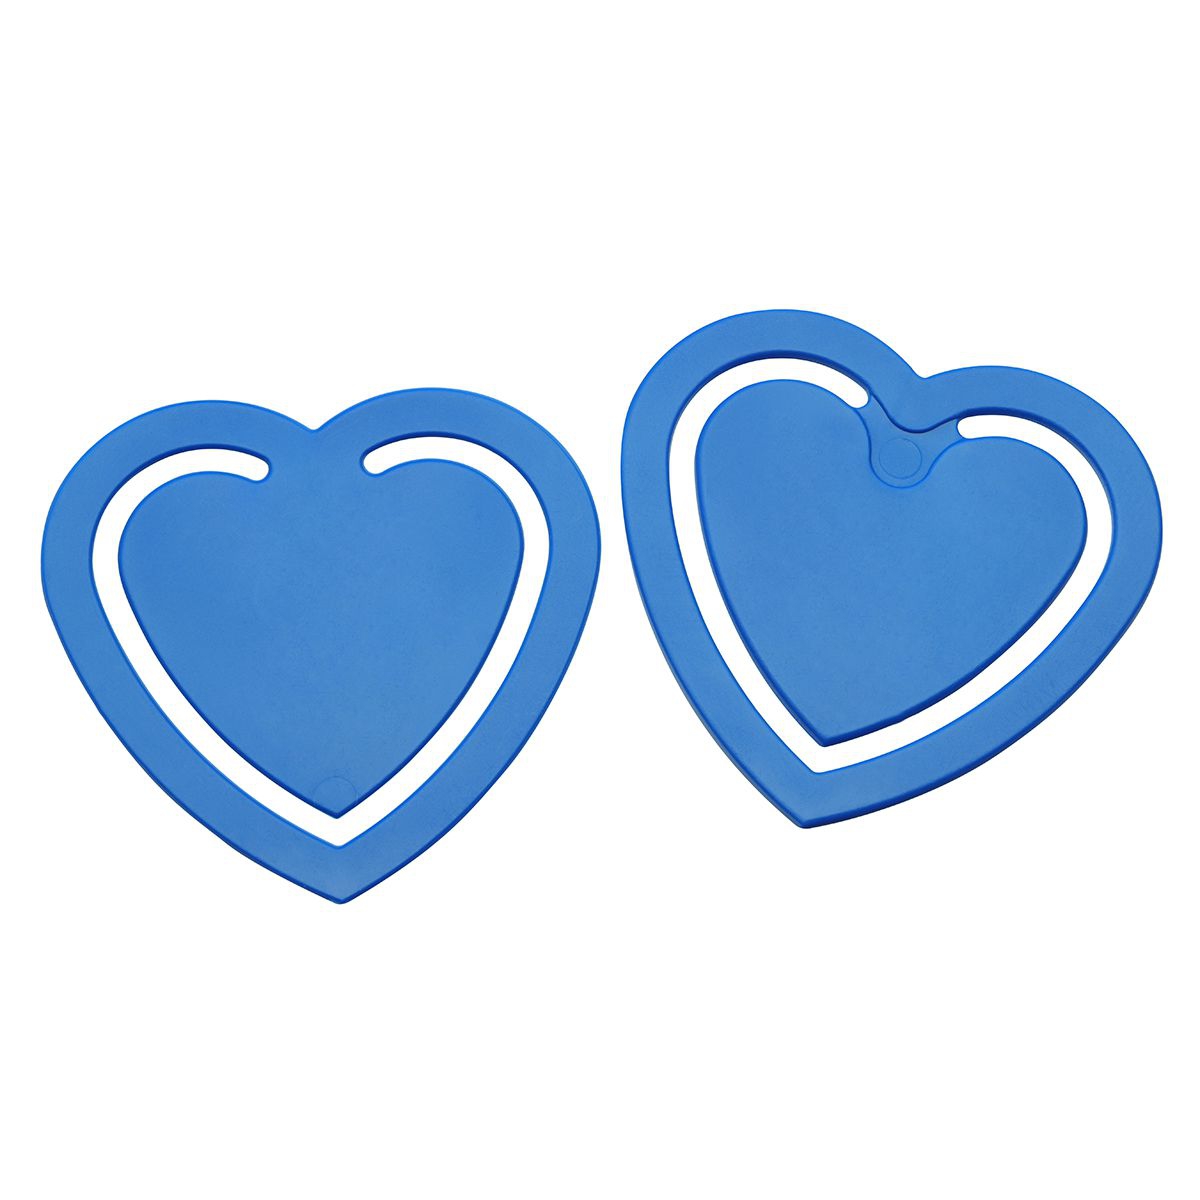 Zettelklammer "Herz", blau